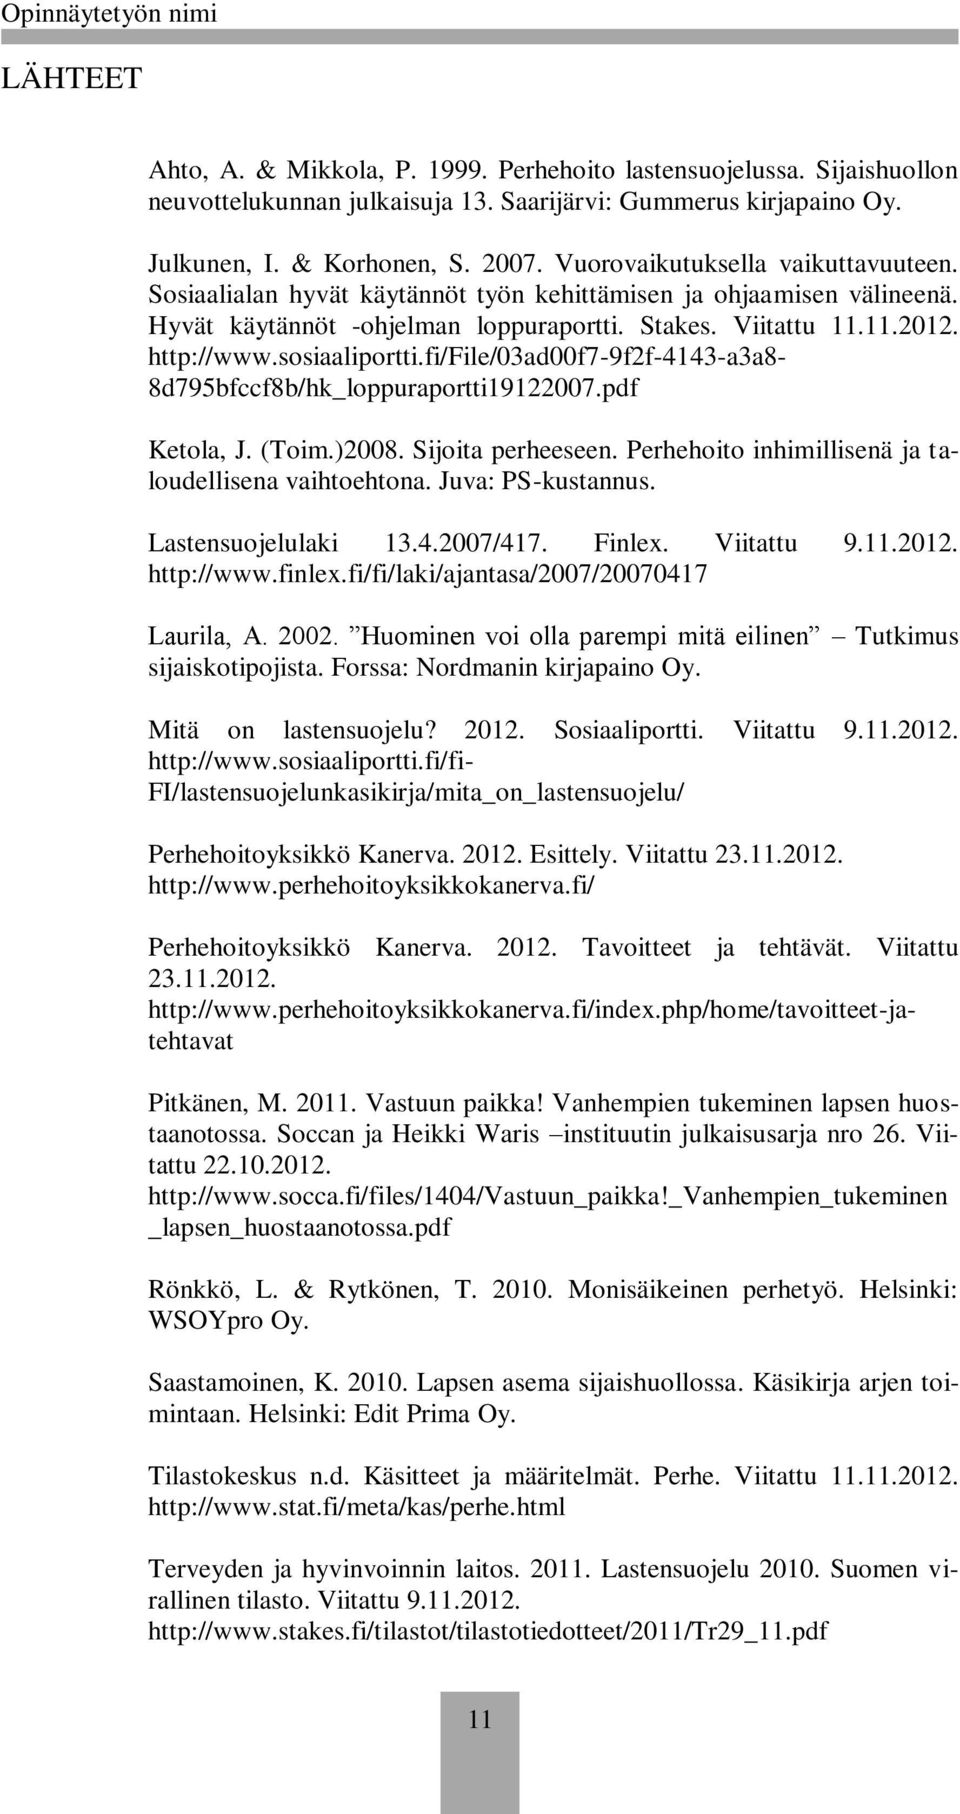 sosiaaliportti.fi/file/03ad00f7-9f2f-4143-a3a8-8d795bfccf8b/hk_loppuraportti19122007.pdf Ketola, J. (Toim.)2008. Sijoita perheeseen. Perhehoito inhimillisenä ja taloudellisena vaihtoehtona.